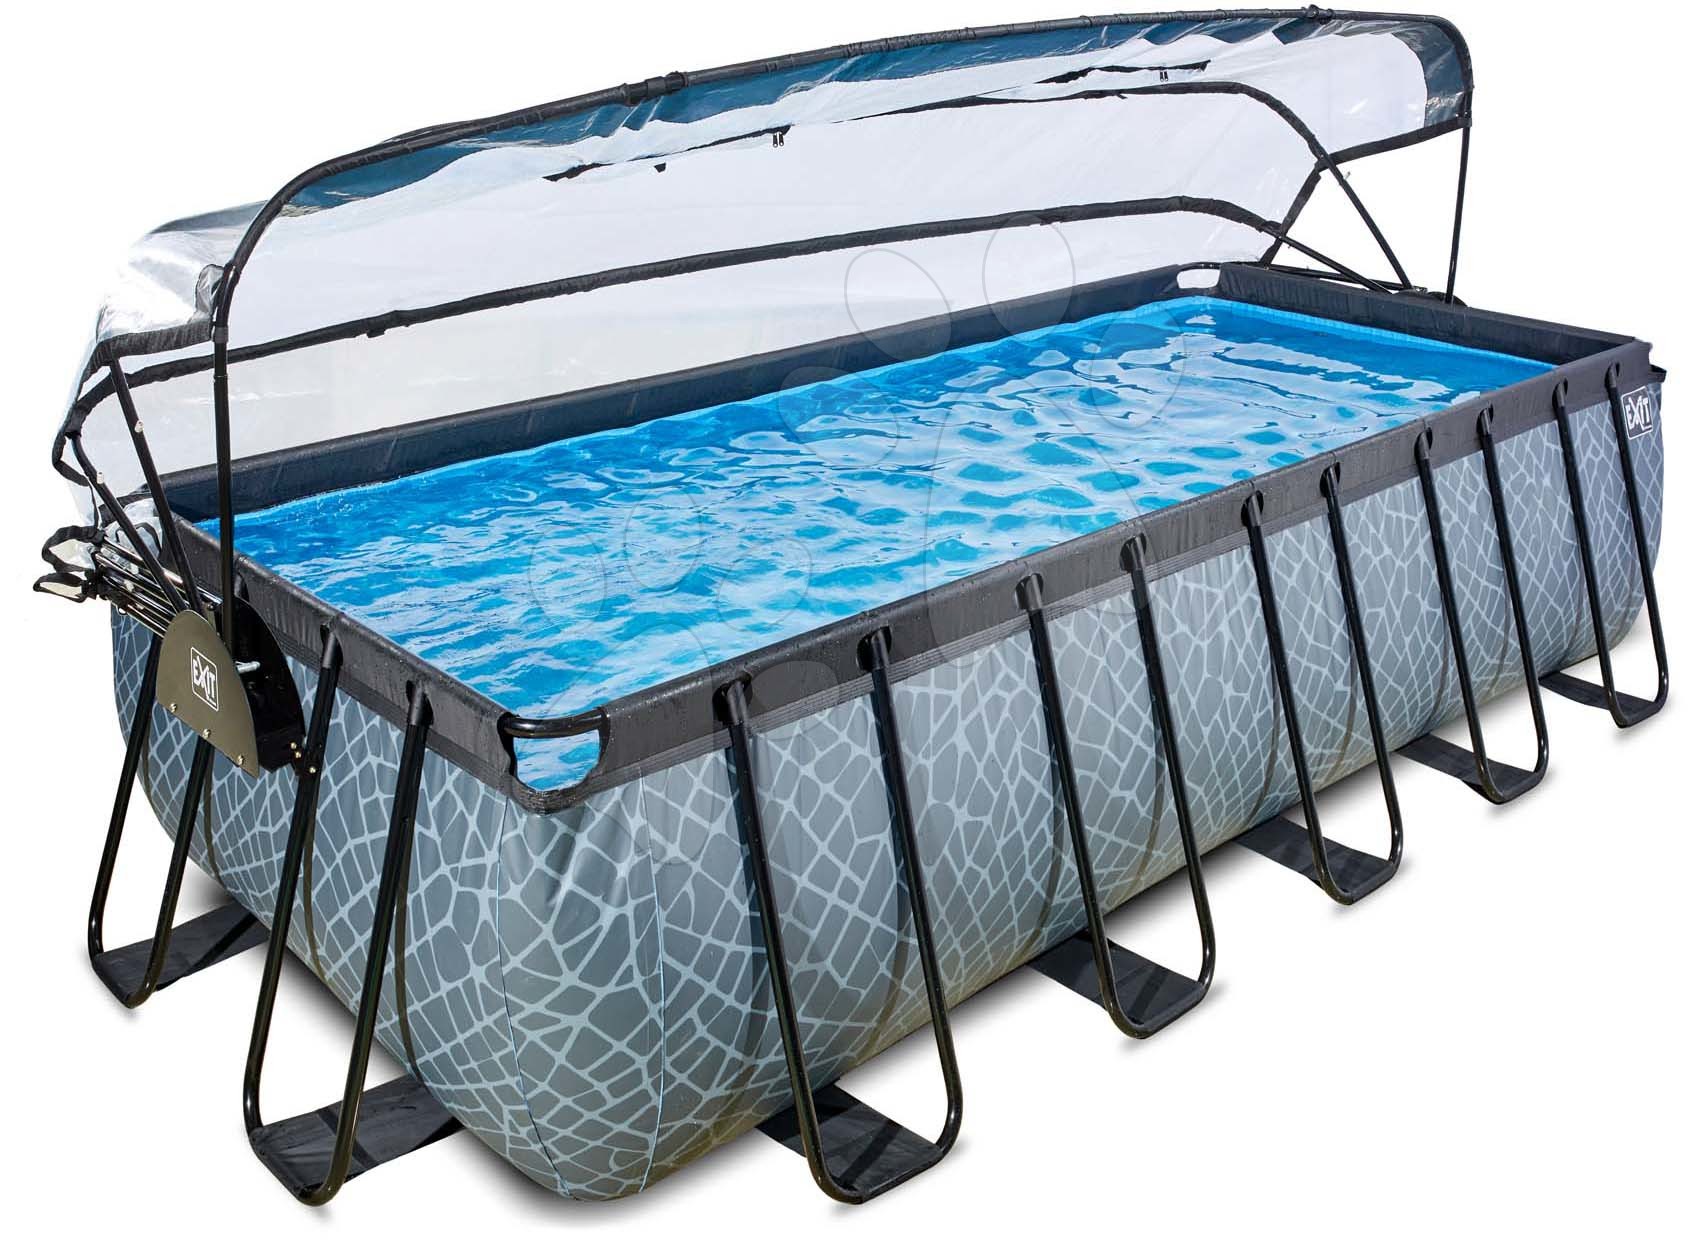 Bazén s krytem a pískovou filtrací Stone pool Exit Toys ocelová konstrukce 540*250*122 cm šedý od 6 let